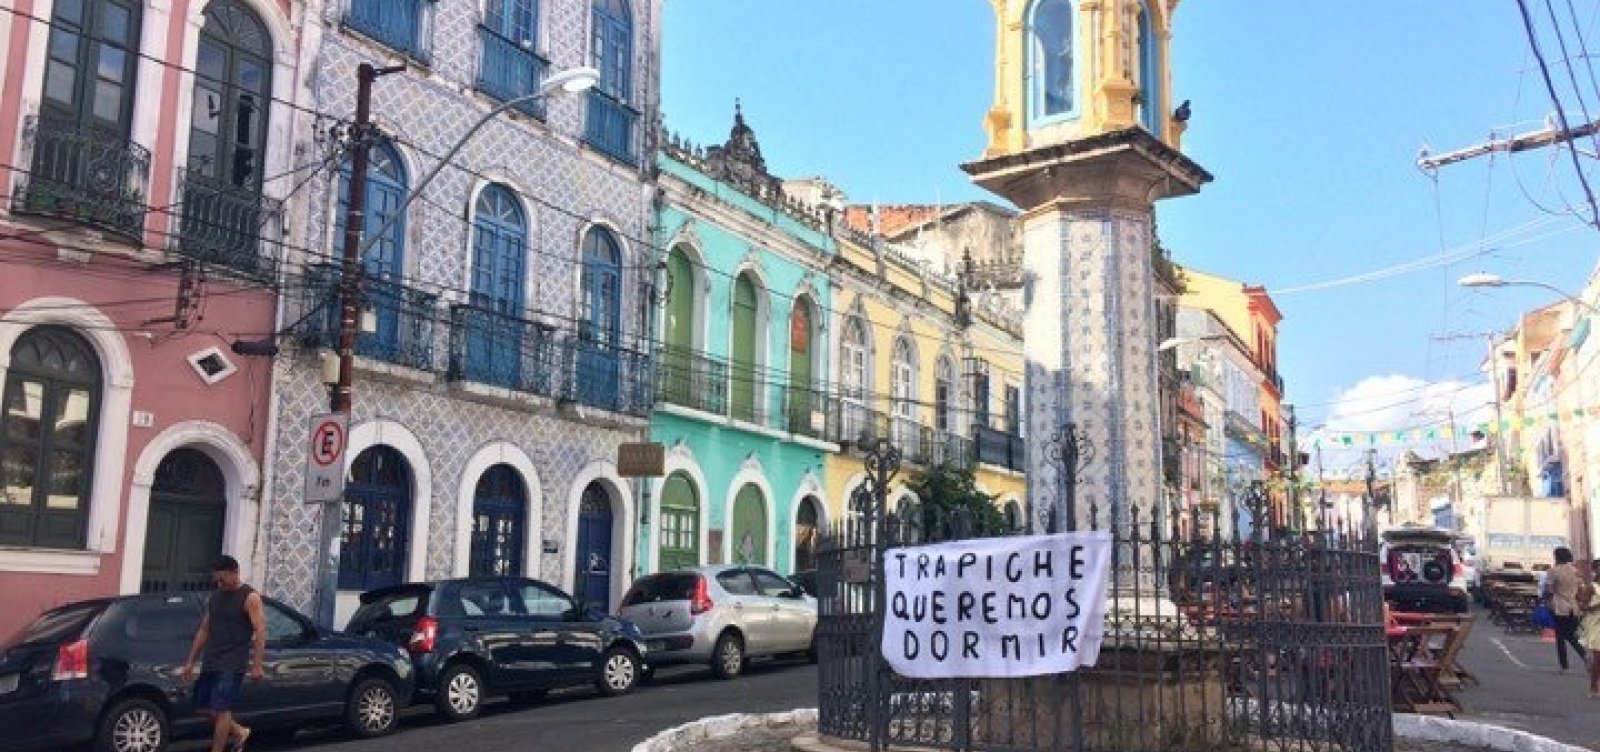 Moradores de Santo Antônio Além do Carmo protestam contra Trapiche Barnabé: 'Queremos dormir'